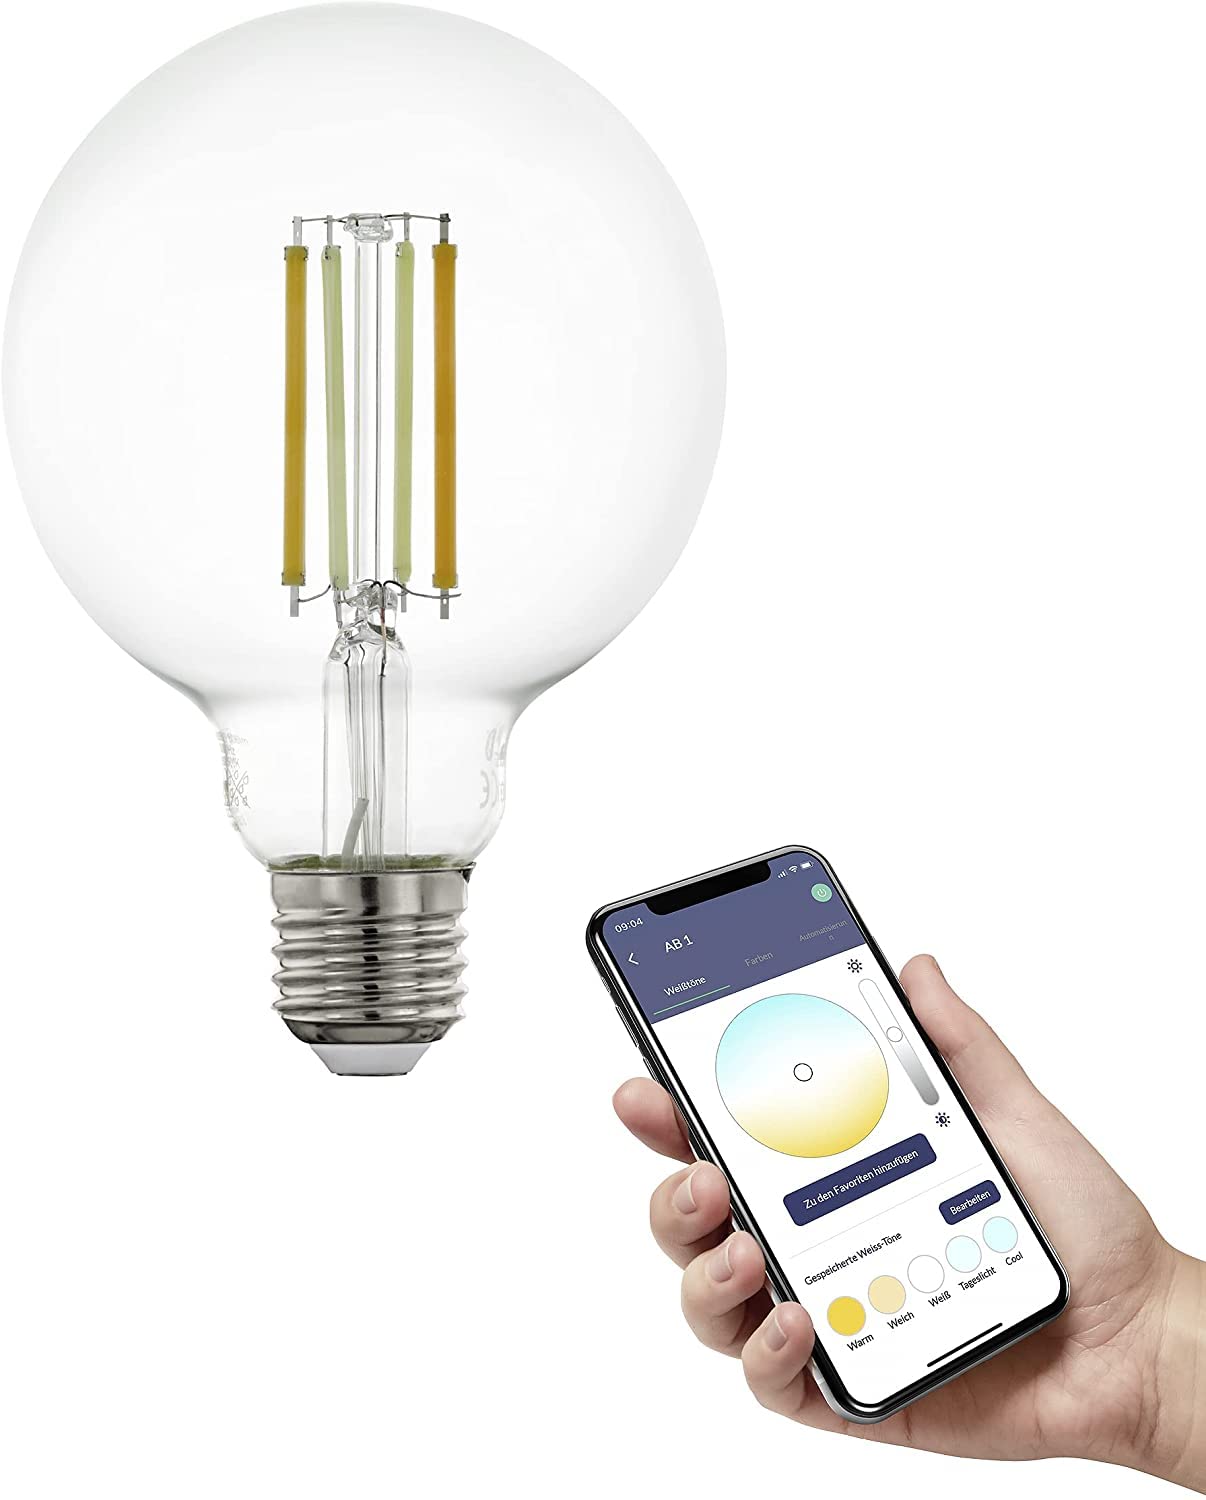 EGLO connect.z Smart-Home LED Leuchtmittel E27, G95, ZigBee, App und Sprachsteuerung Alexa, dimmbar, Lichtfarbe einstellbar (warmweiß-kaltweiß), 700 Lumen, 6 Watt, Vintage-Glühbirne klar